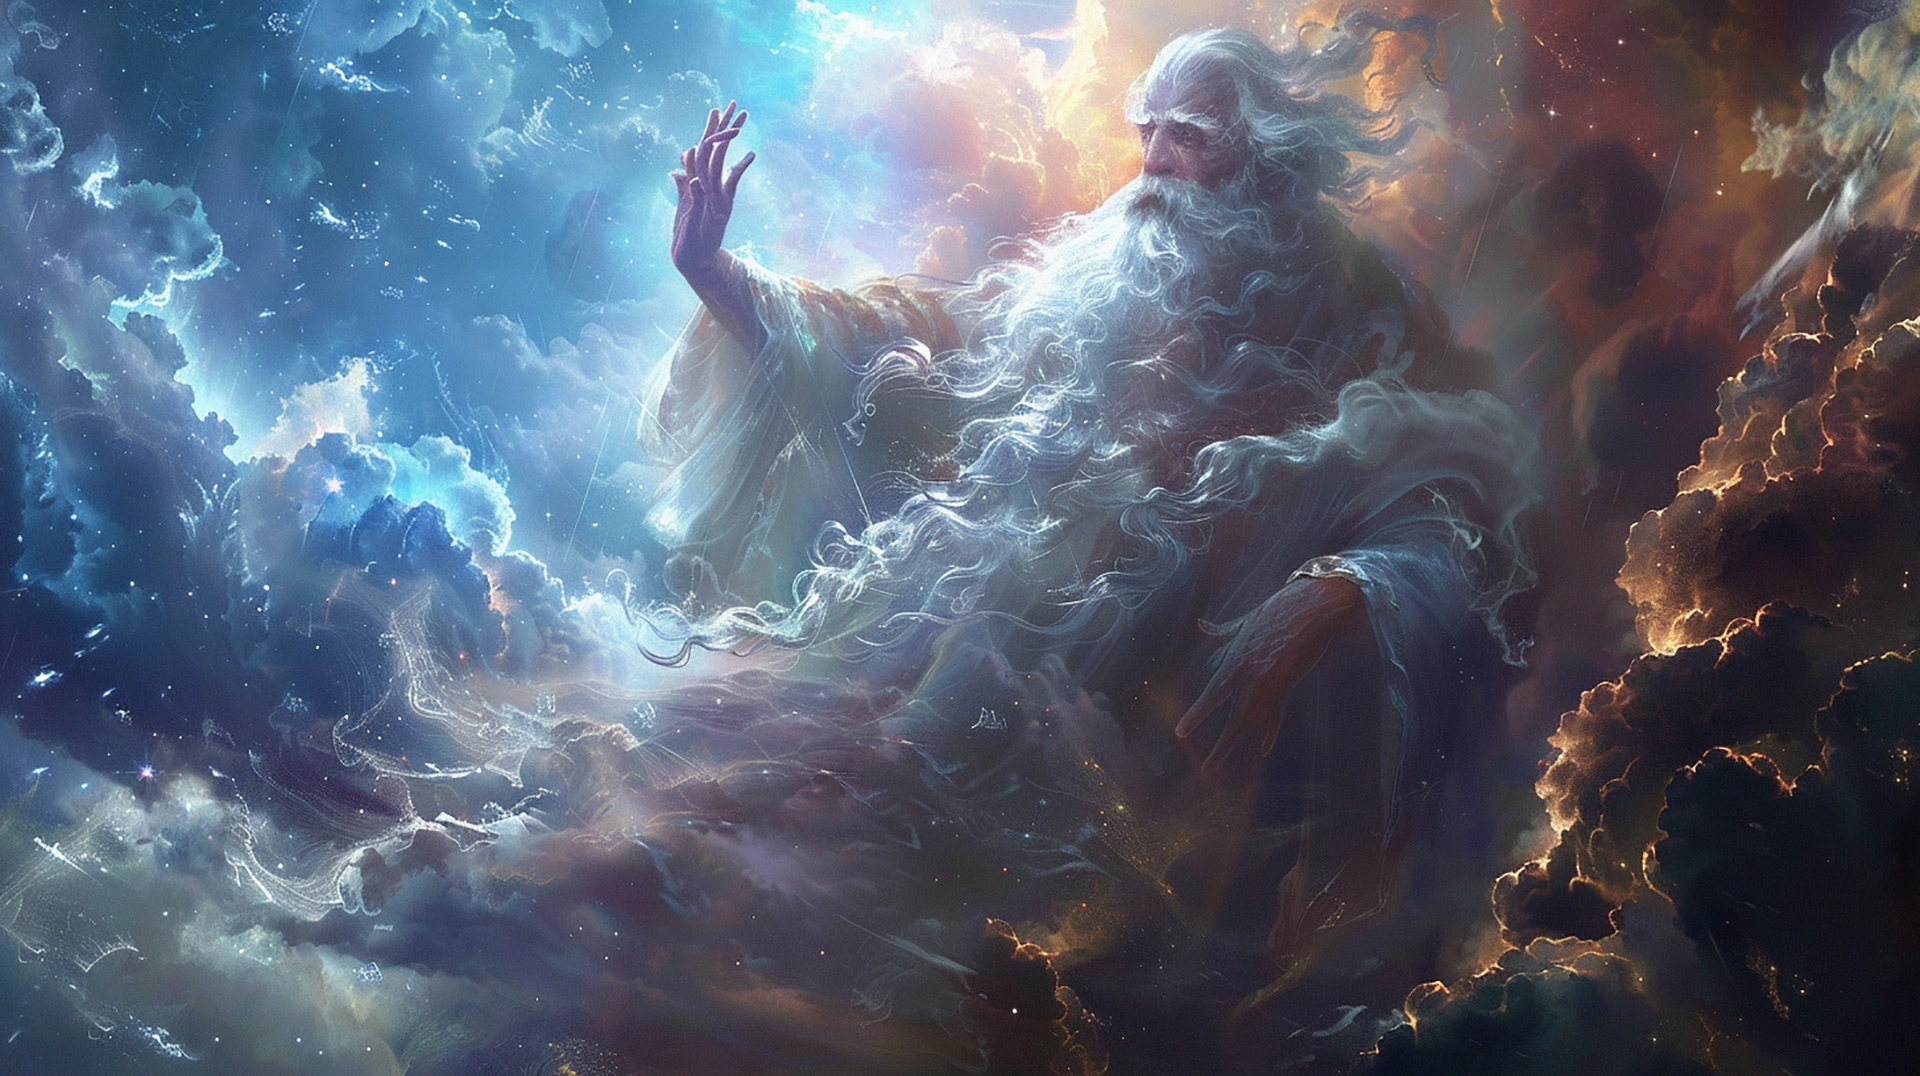 Celestial Splendor: God in Digital Art